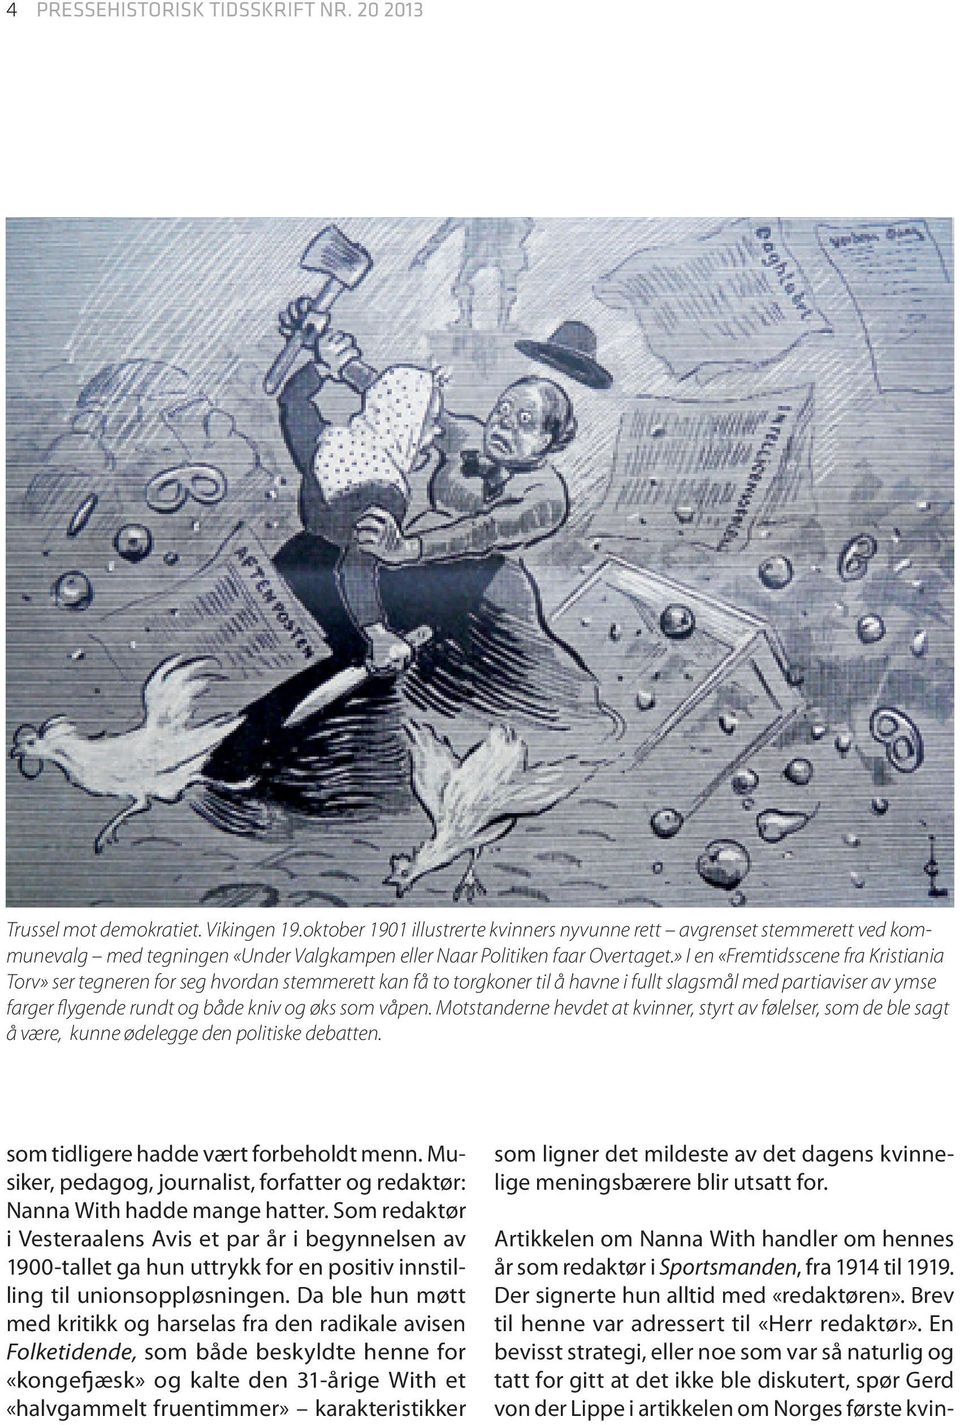 » I en «Fremtidsscene fra Kristiania Torv» ser tegneren for seg hvordan stemmerett kan få to torgkoner til å havne i fullt slagsmål med partiaviser av ymse farger flygende rundt og både kniv og øks